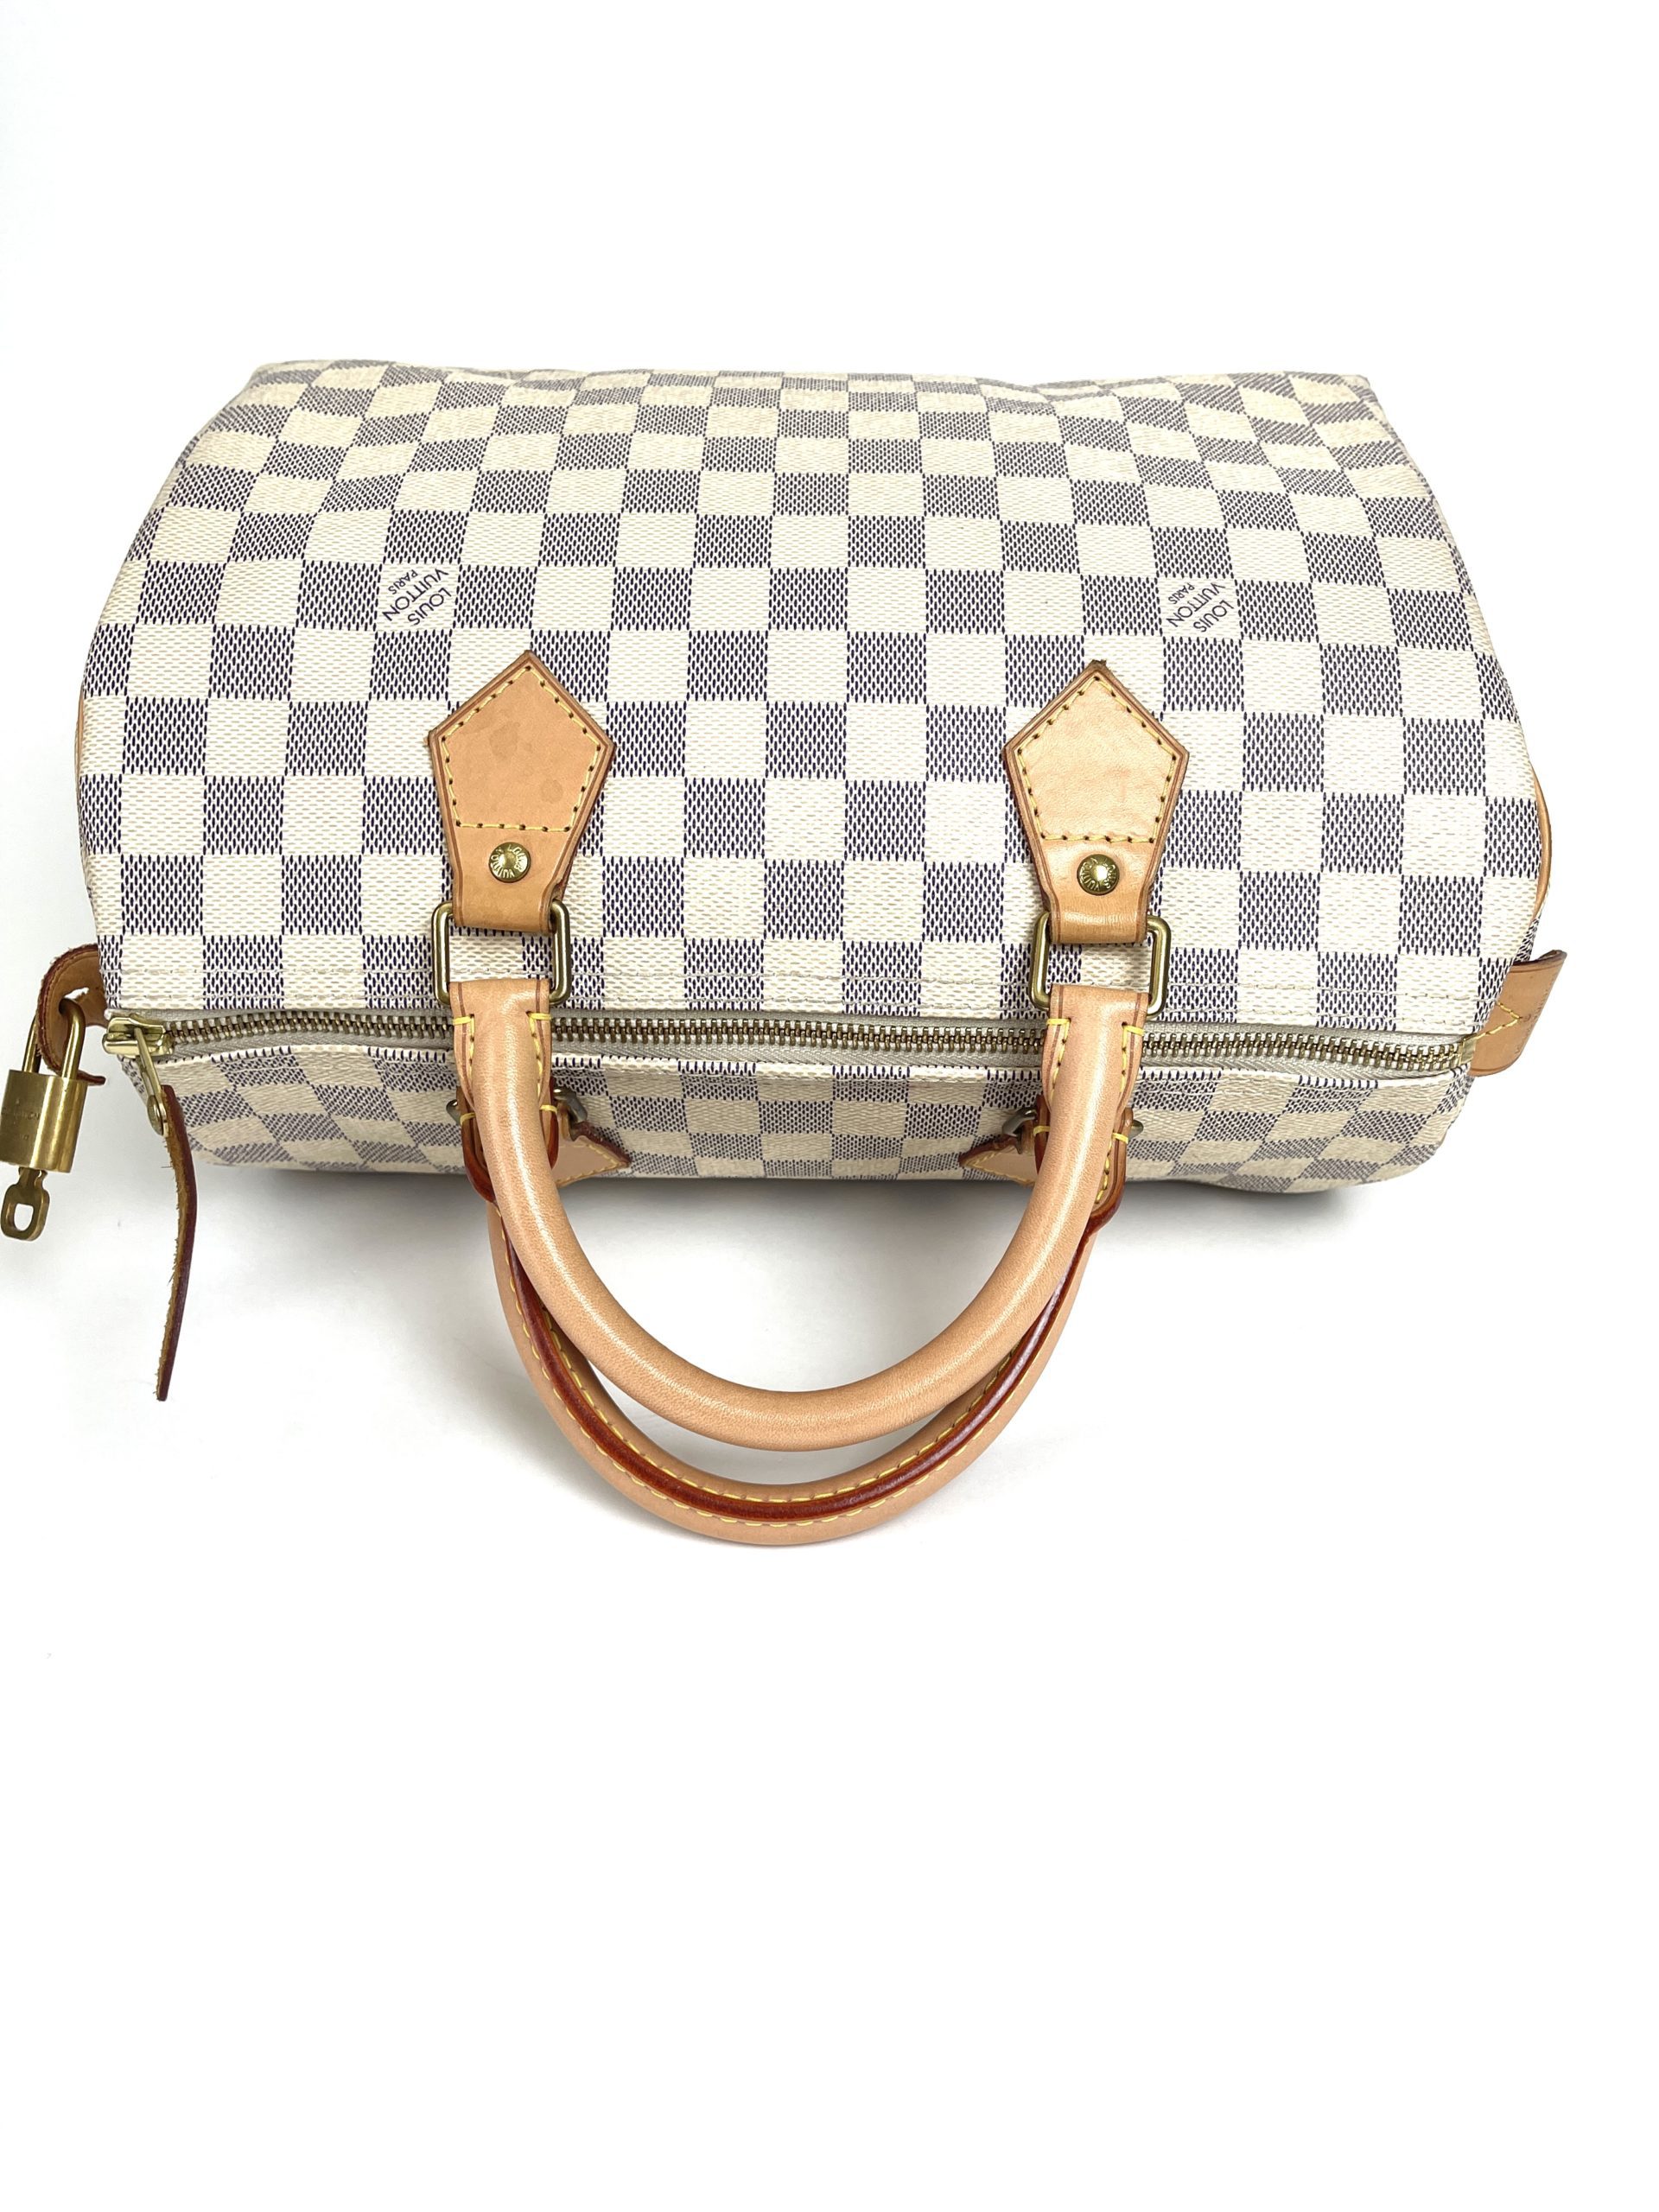 Authentic Louis Vuitton Damier Azur Speedy 30 Bandouliere Bag